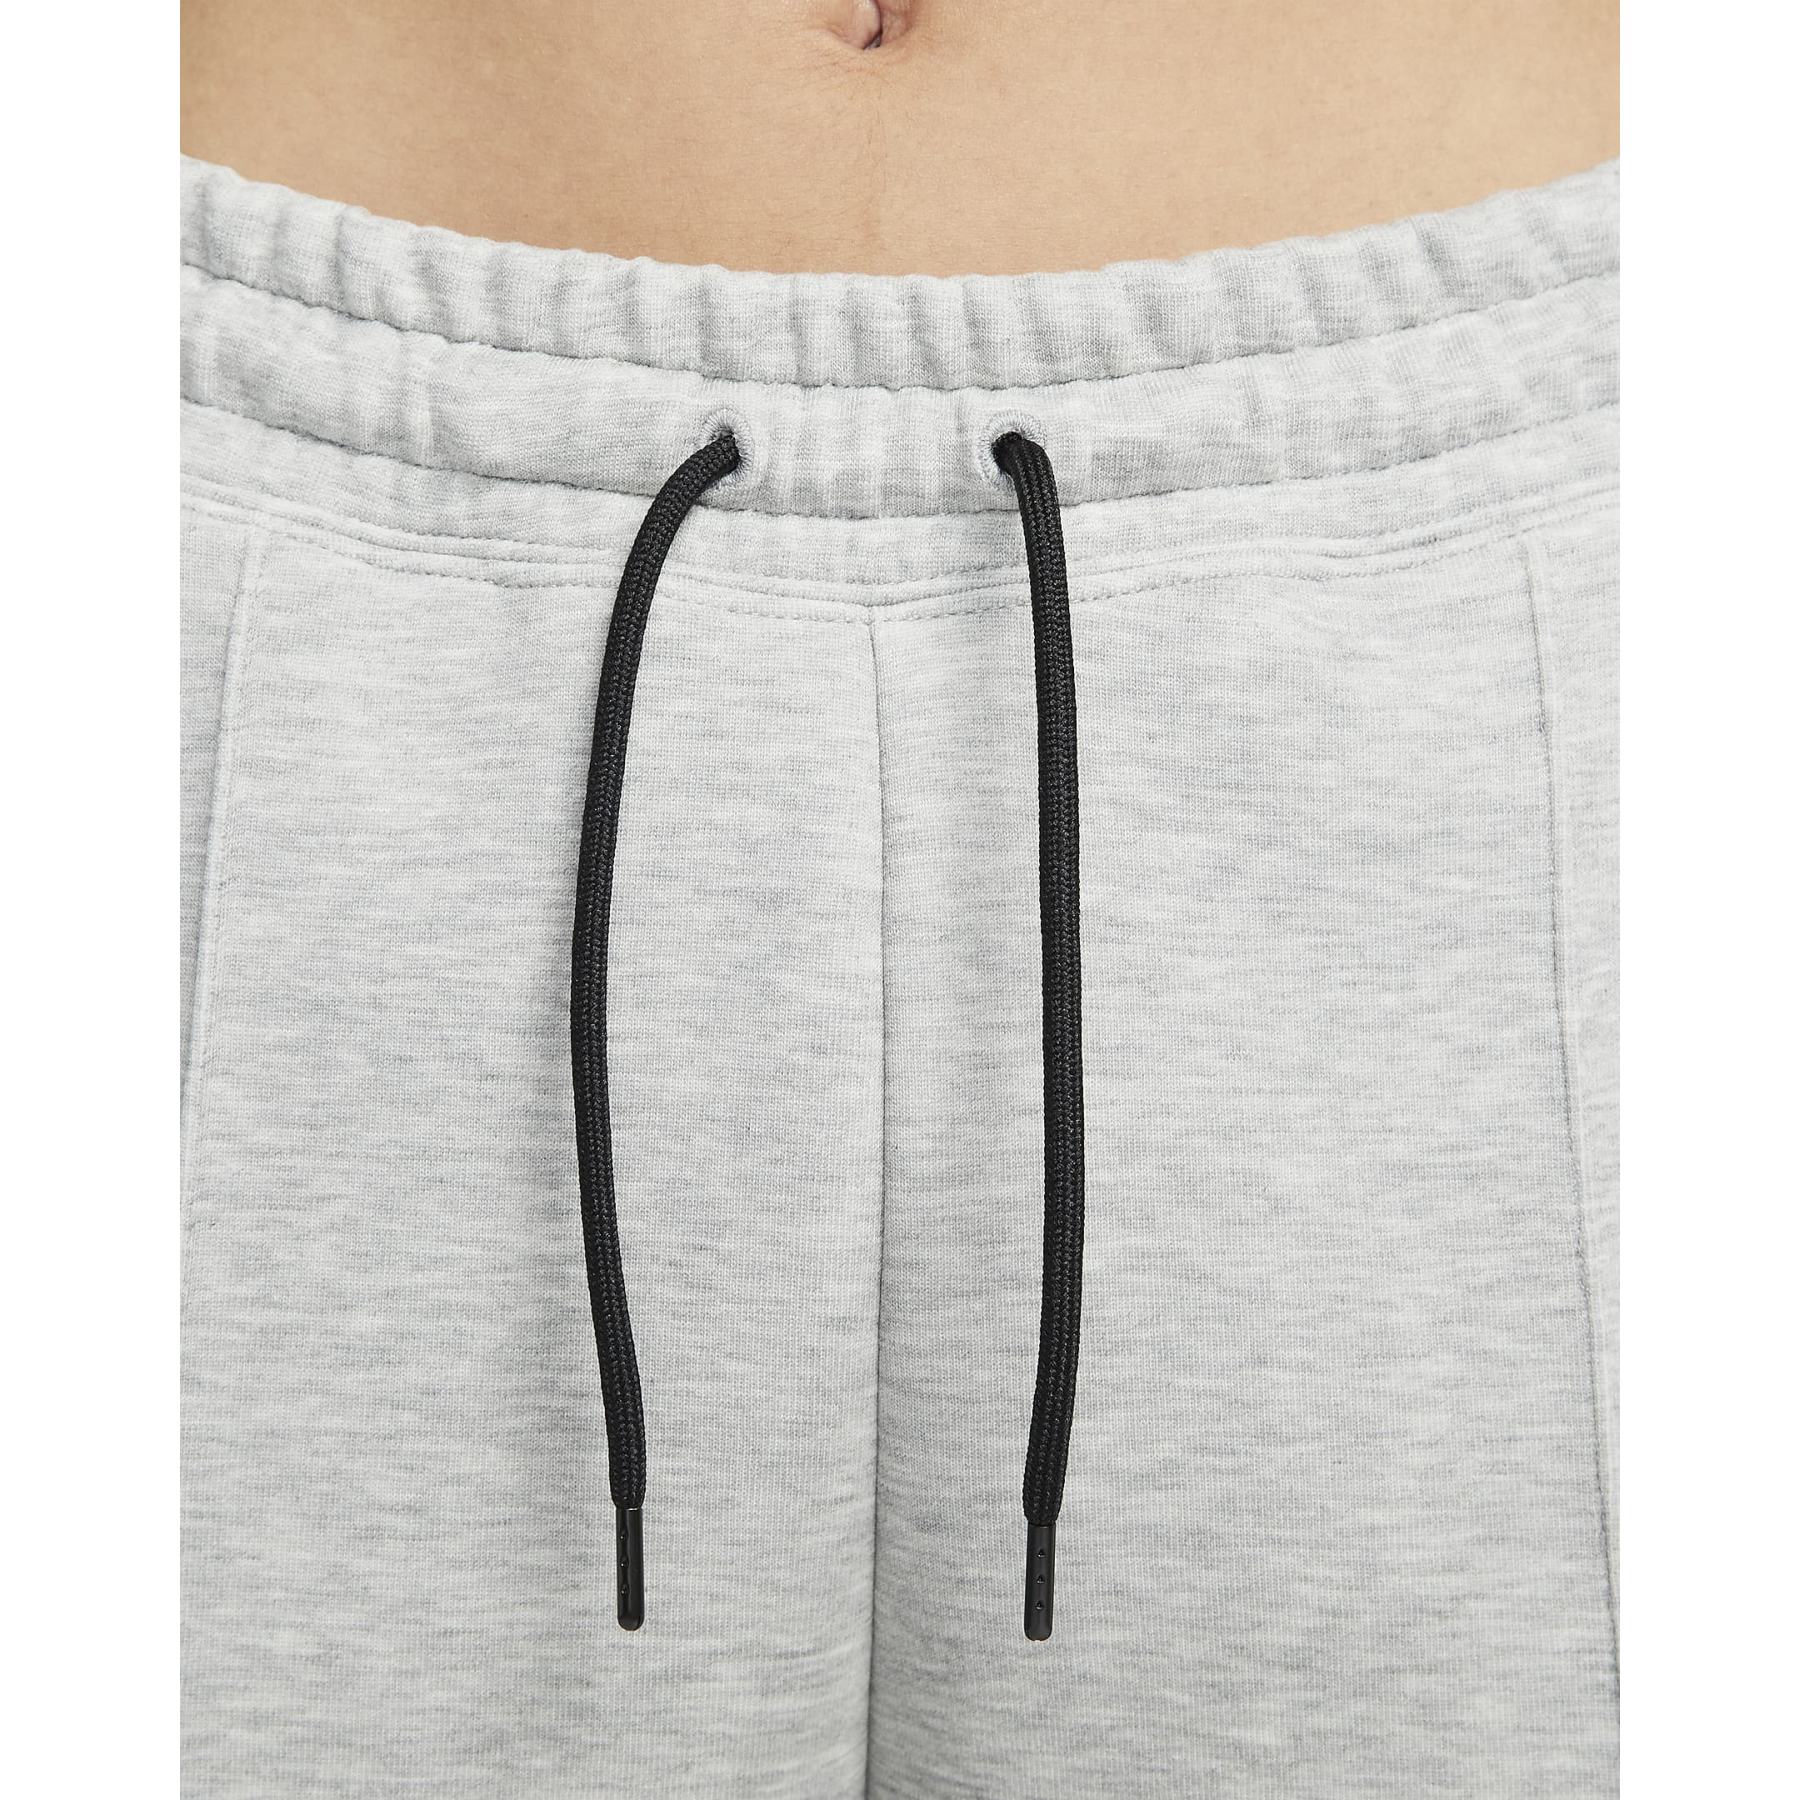 Nike Sportswear Tech Fleece Jogger Pants Women - dark grey heather